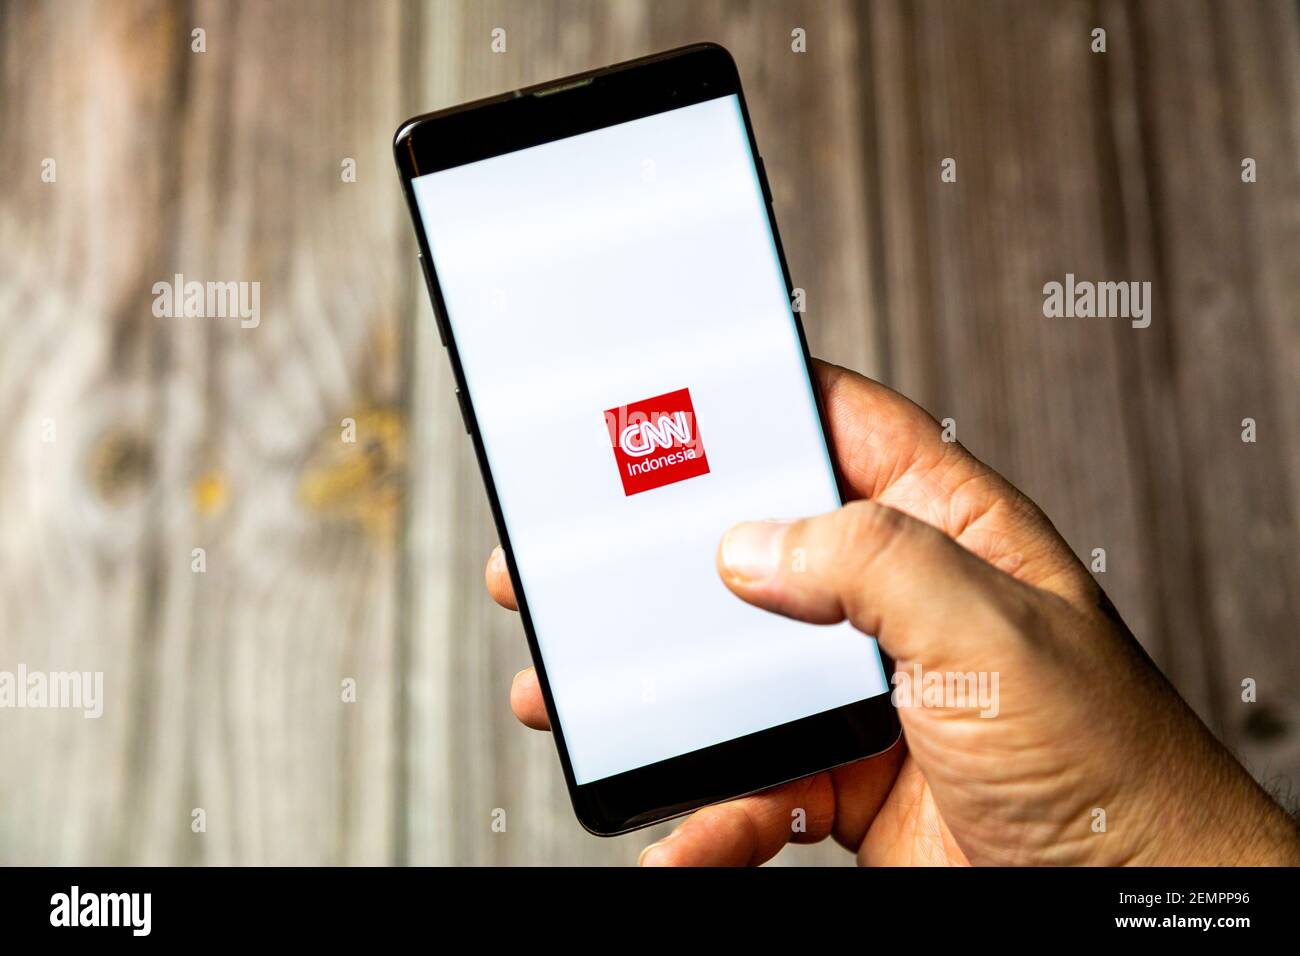 Ein Mobiltelefon oder Mobiltelefon, das von einem gehalten wird Hand mit der CNN Indonesia App geöffnet auf dem Bildschirm Stockfoto